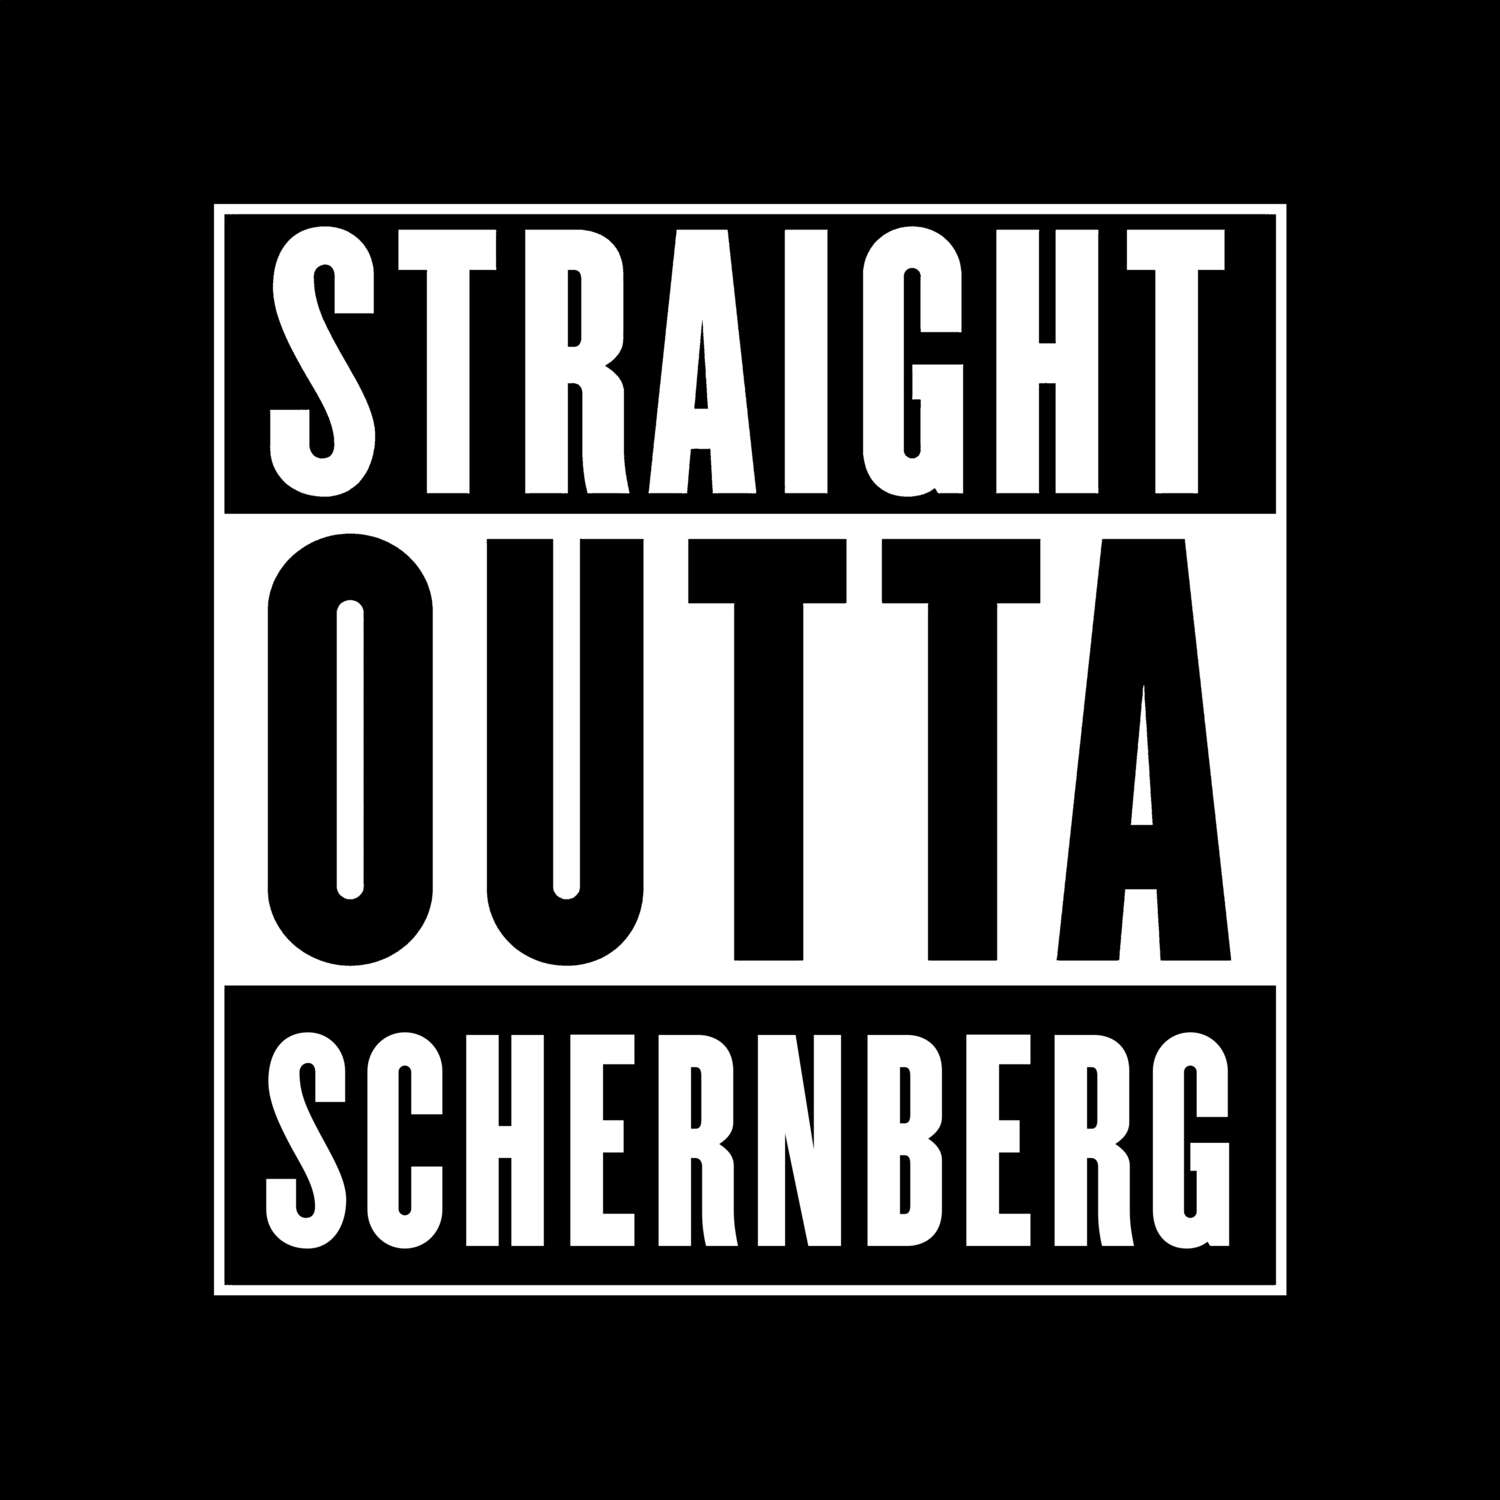 Schernberg T-Shirt »Straight Outta«